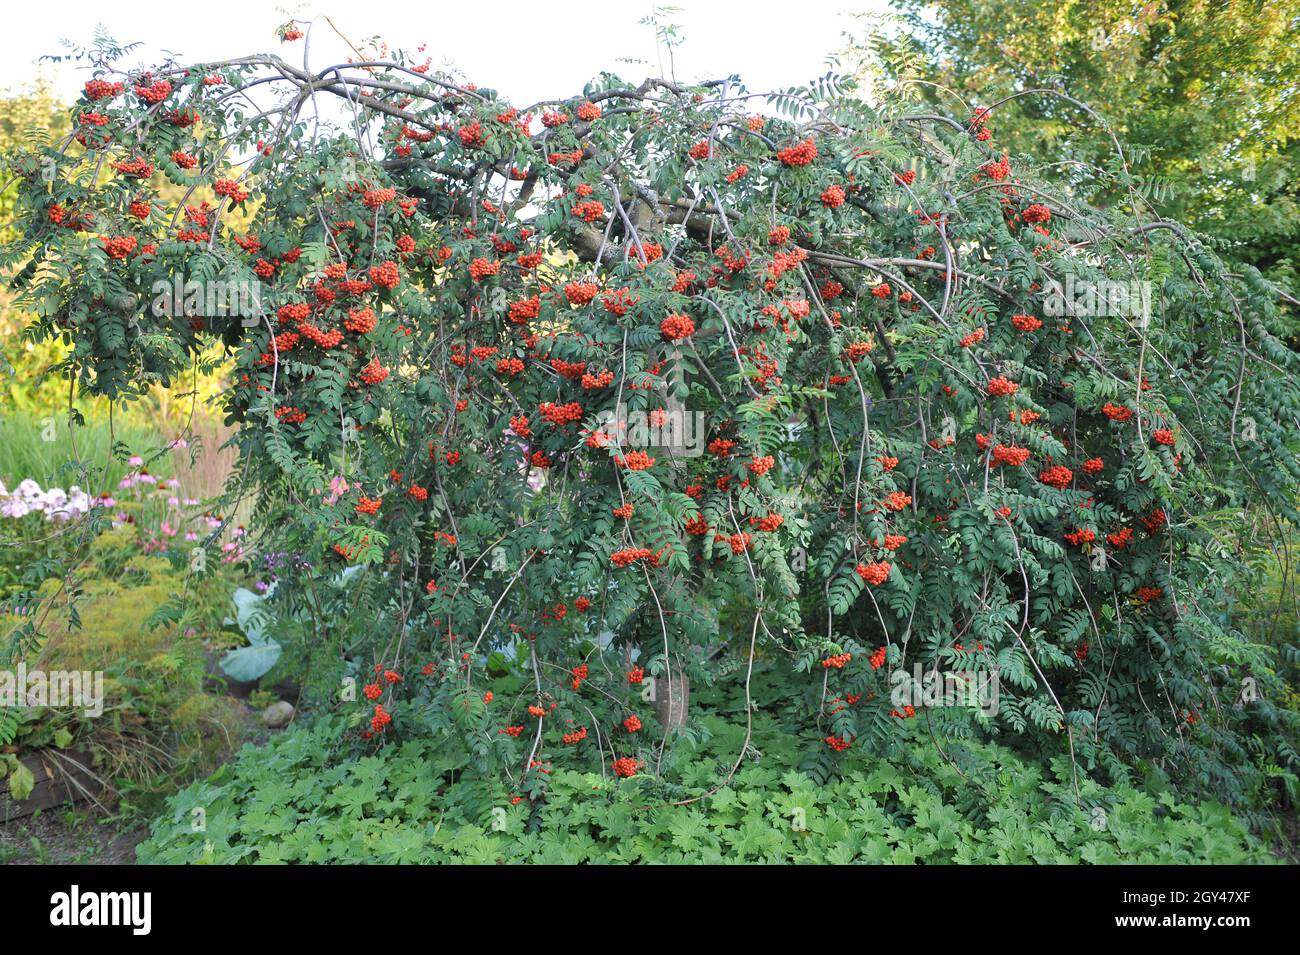 La cenere di montagna europea piangente (Sorbus aucuparia Pendula) porta frutti rossi in un giardino nel mese di agosto Foto Stock